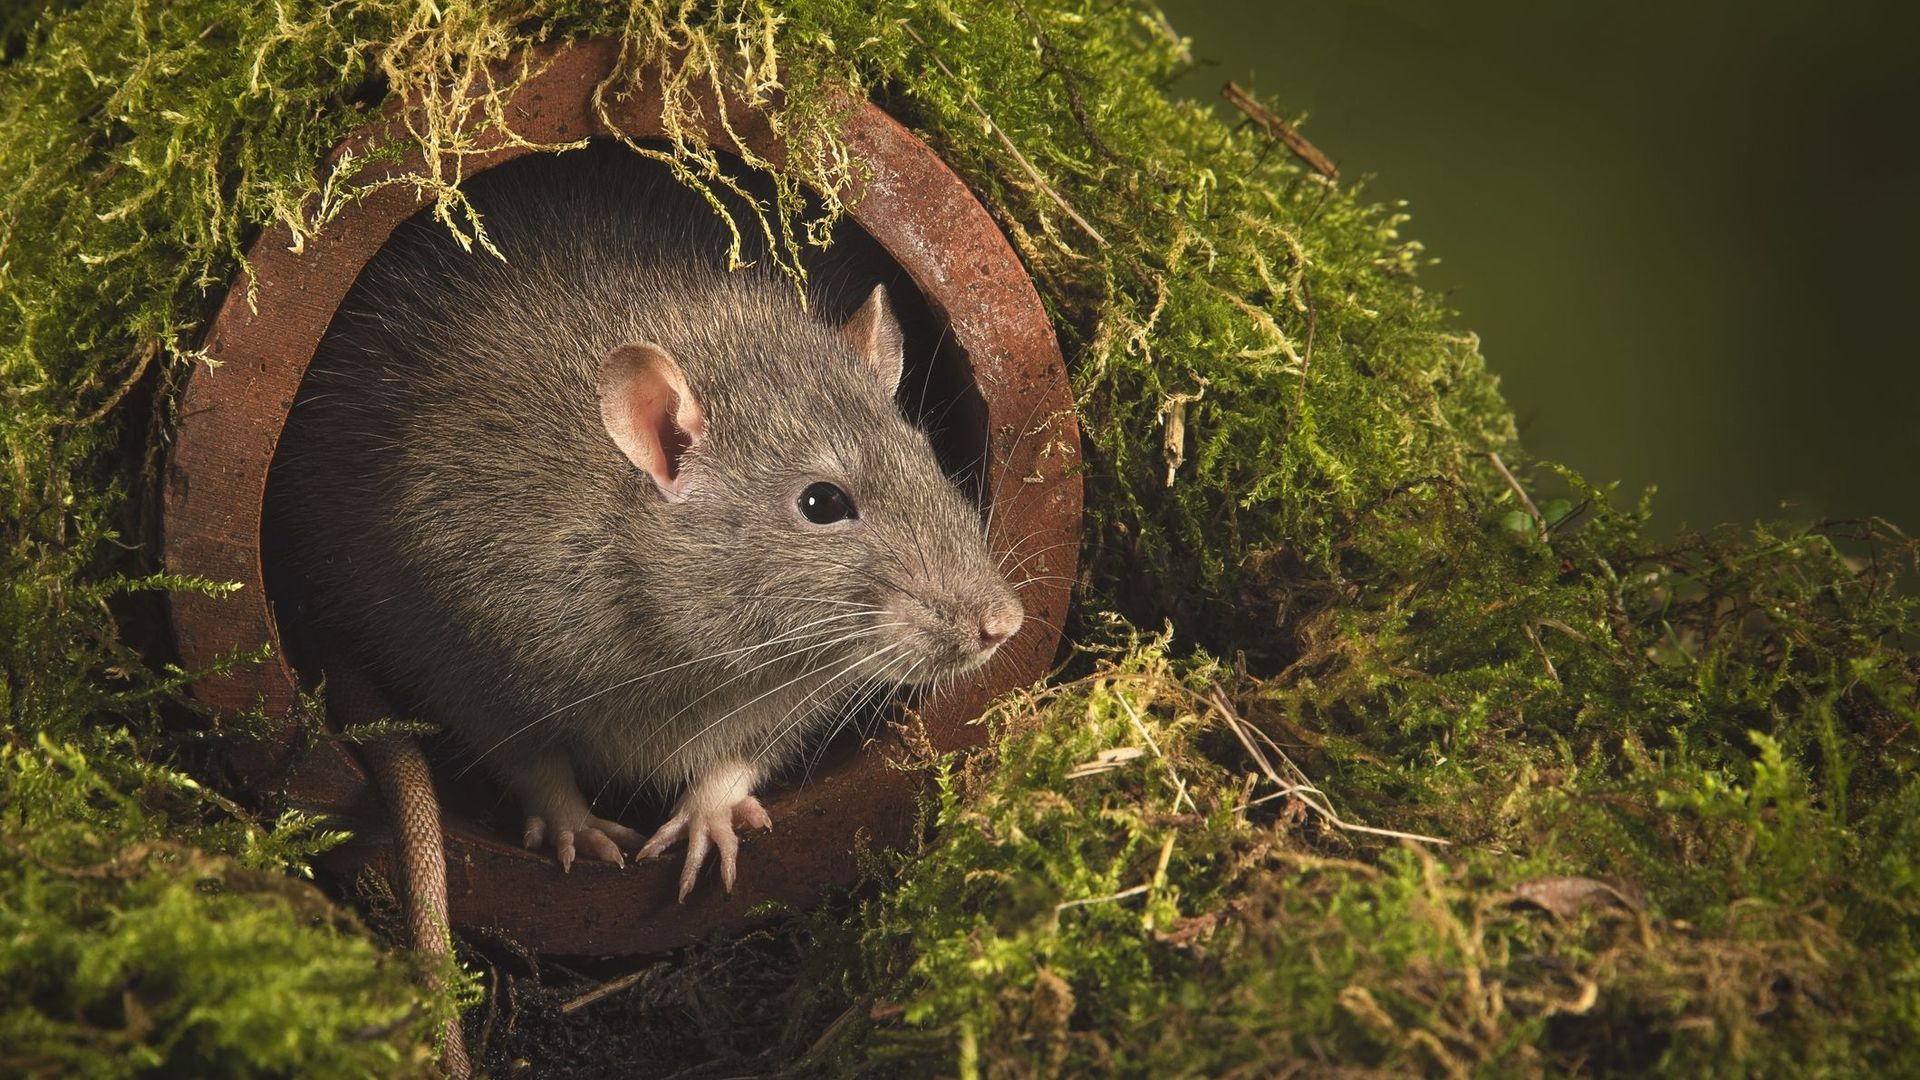 Les rats savent gérer leur temps pour être efficaces, vous aussi vous pouvez !